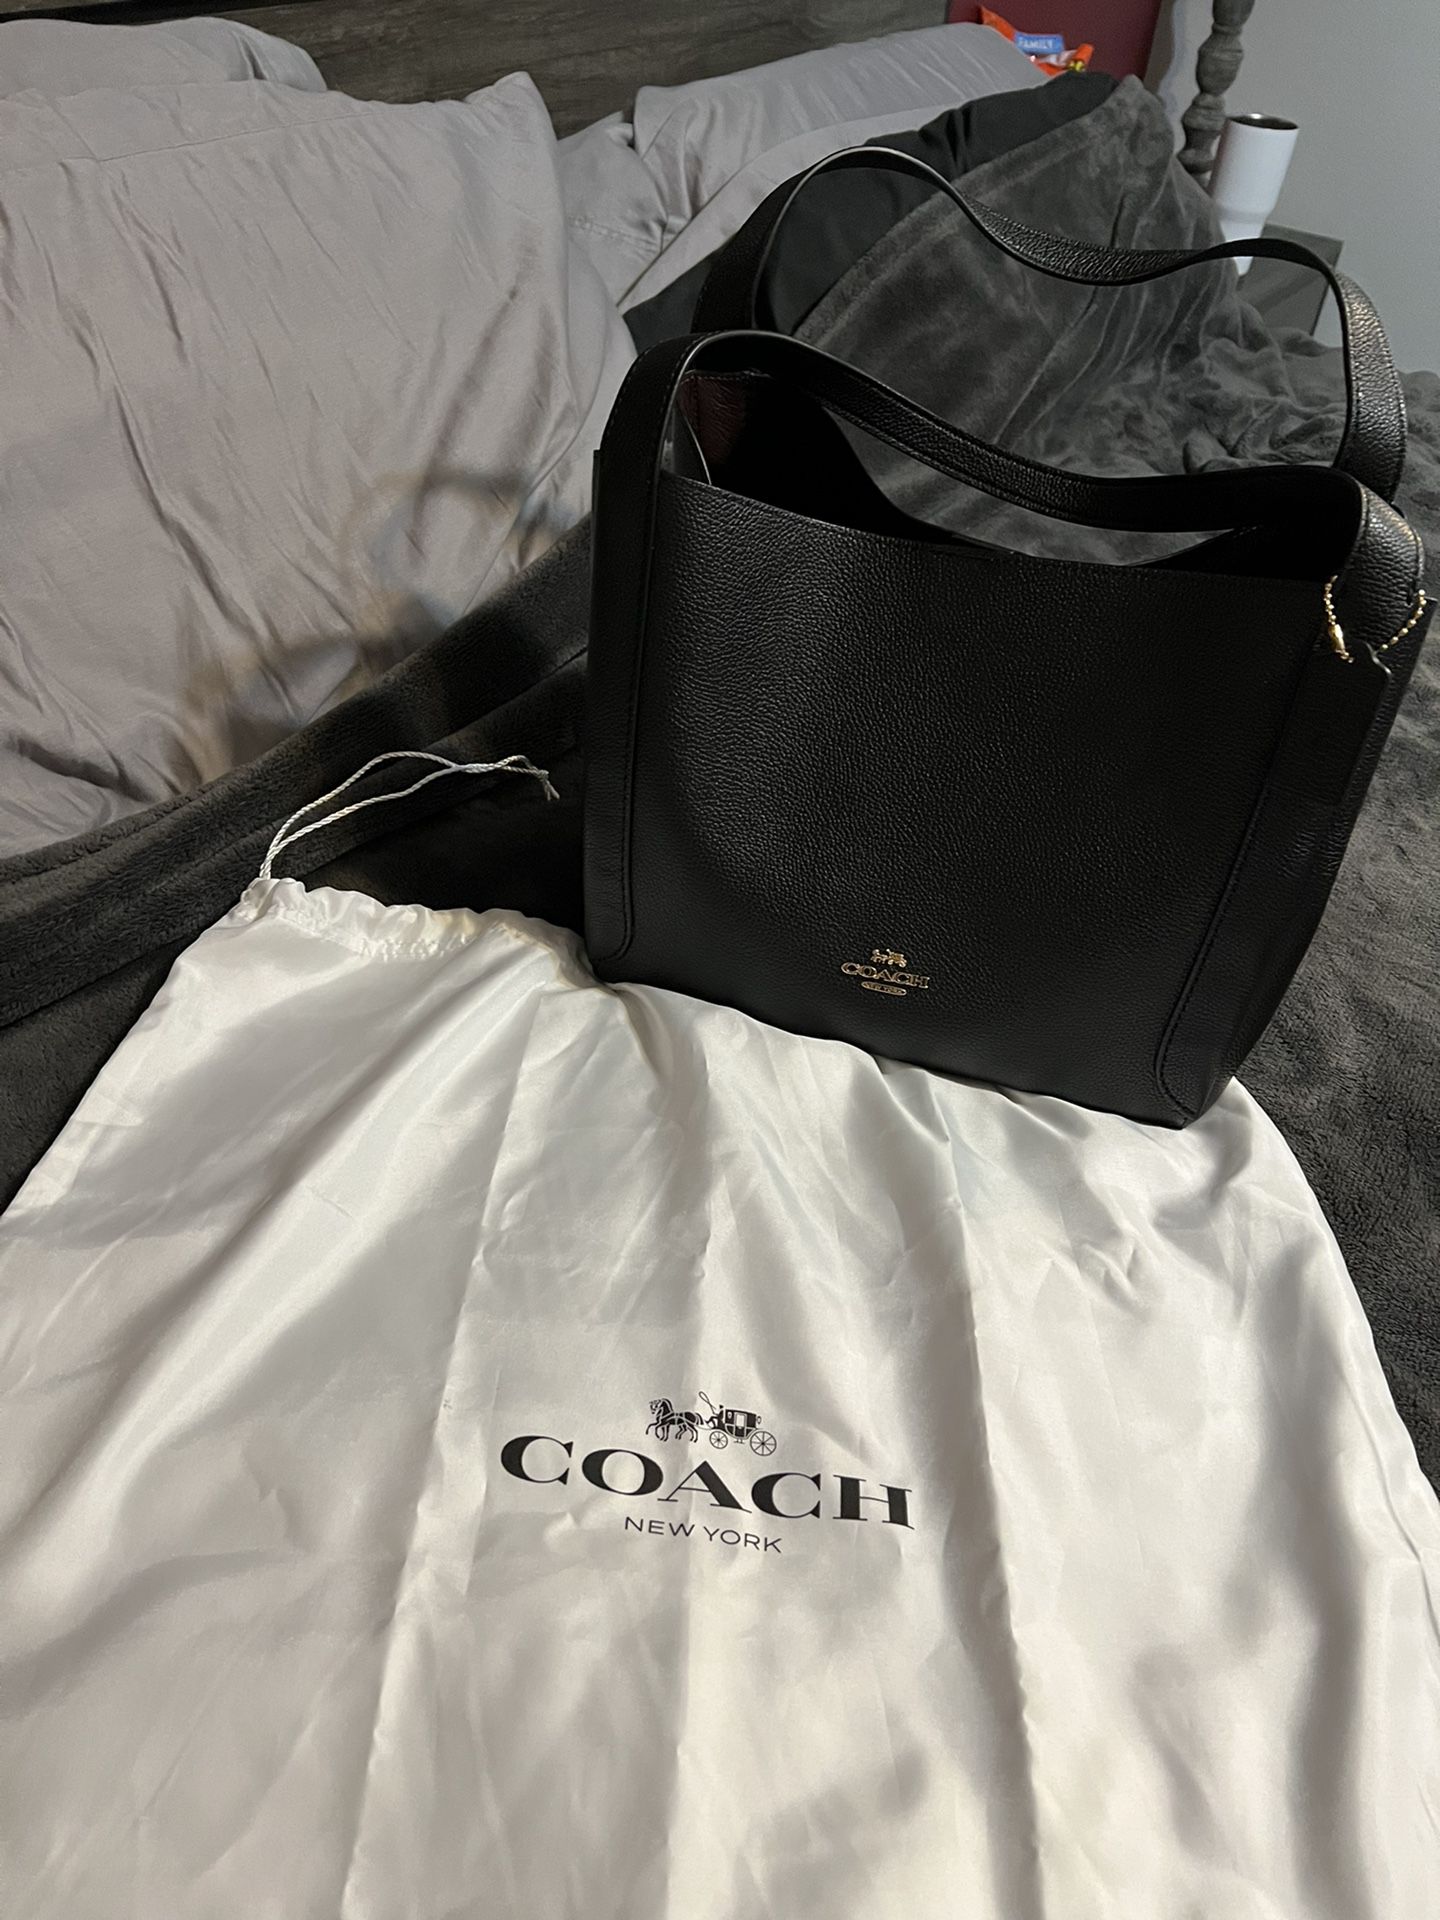 Large Black Coach Shoulder Bag for Sale in Battle Ground, WA - OfferUp